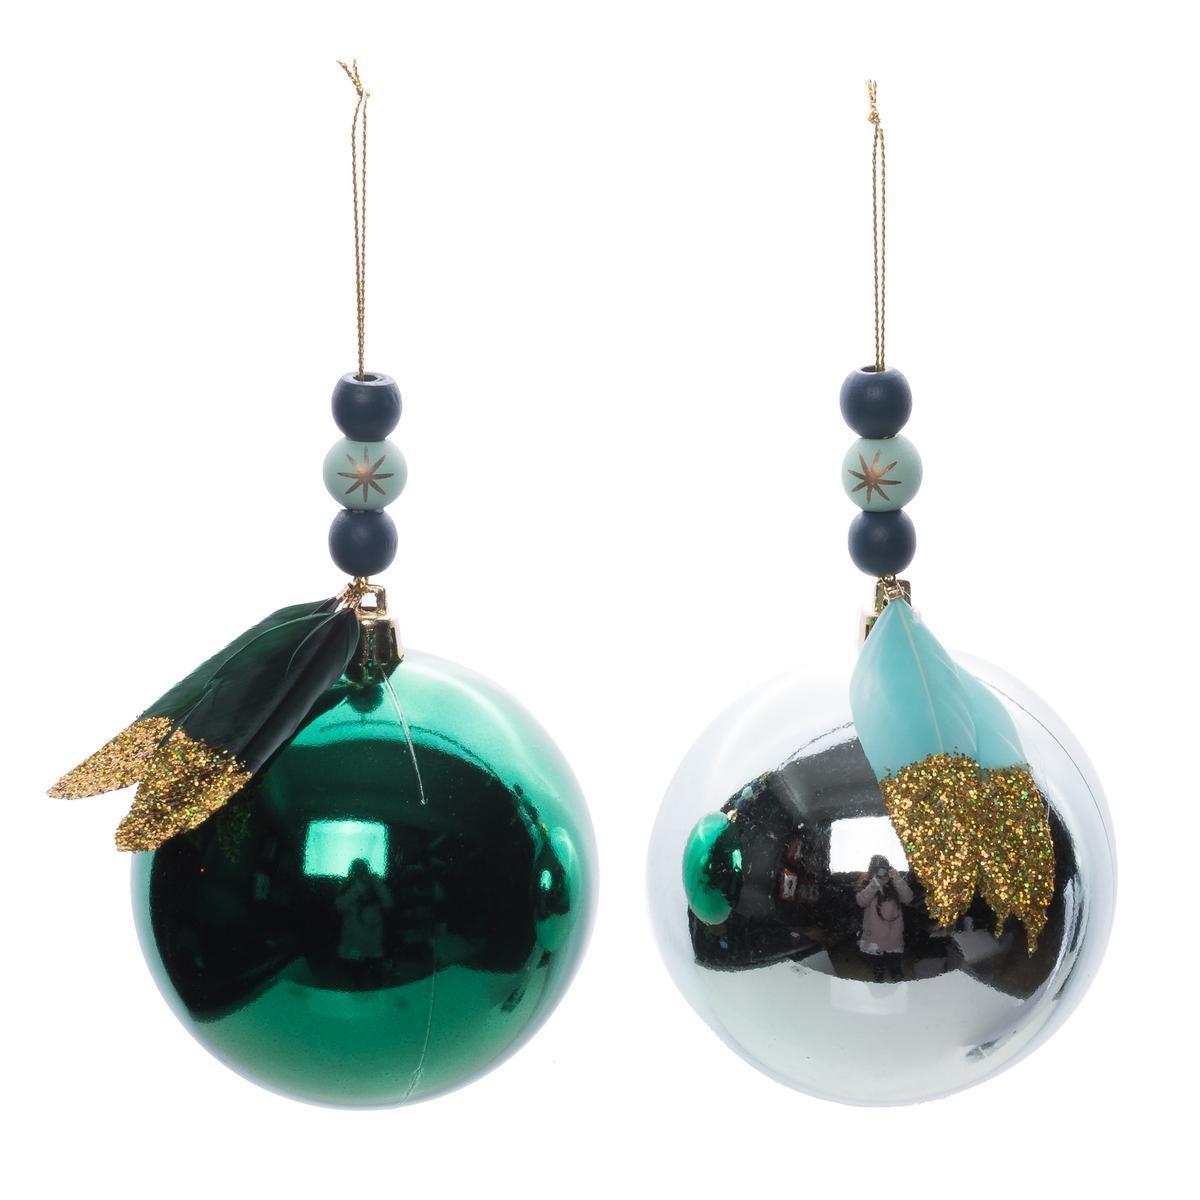 Boule à plumes et perles - ø 8 cm - Différents coloris - Vert, bleu, or